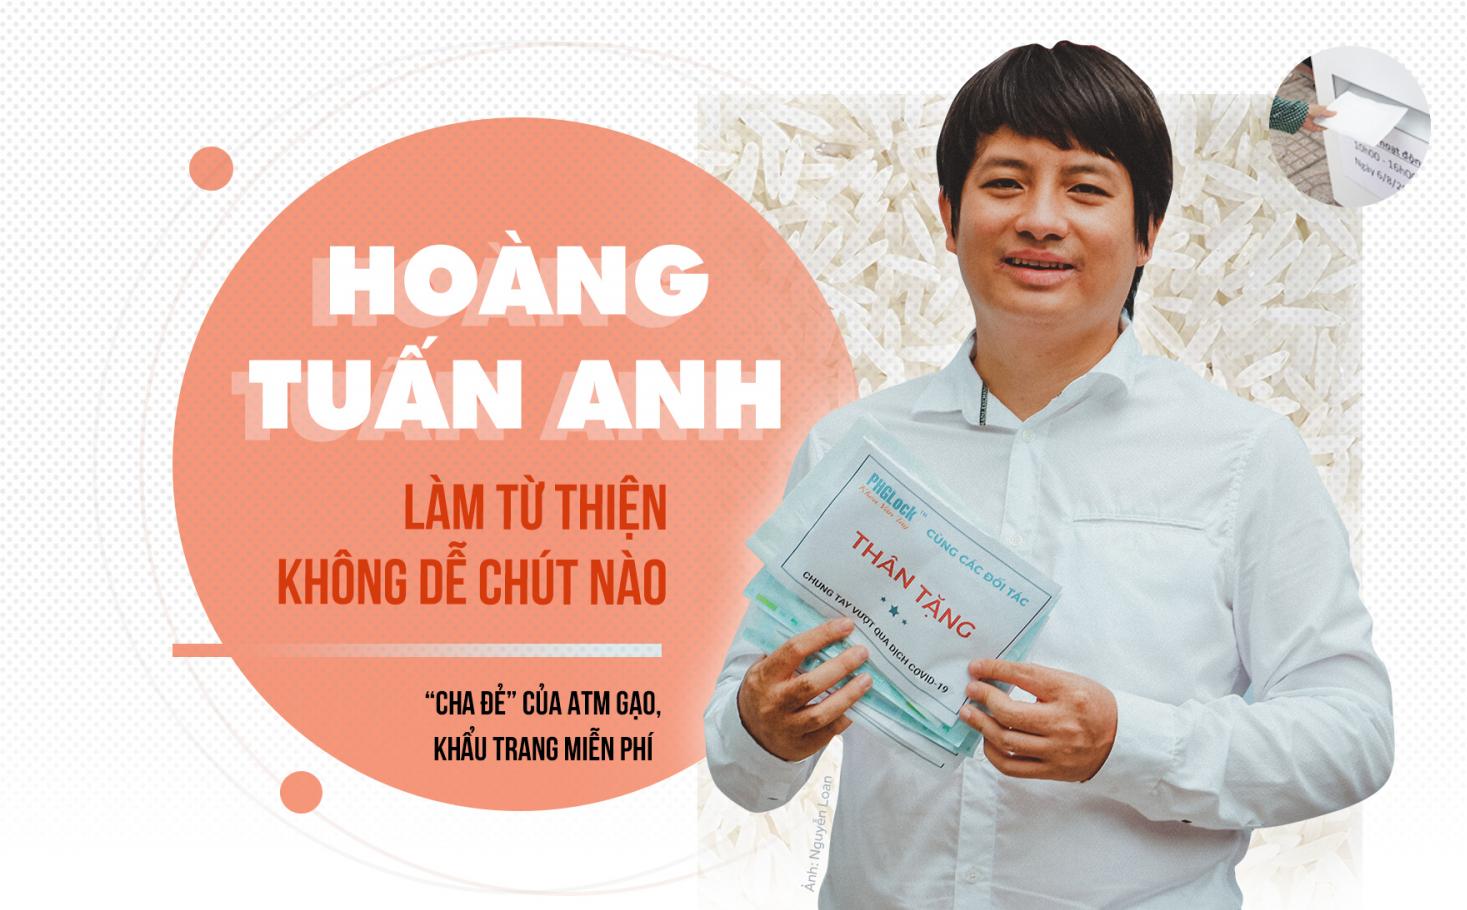 "Cha đẻ" ATM gạo Hoàng Tuấn Anh: Làm từ thiện không dễ chút nào